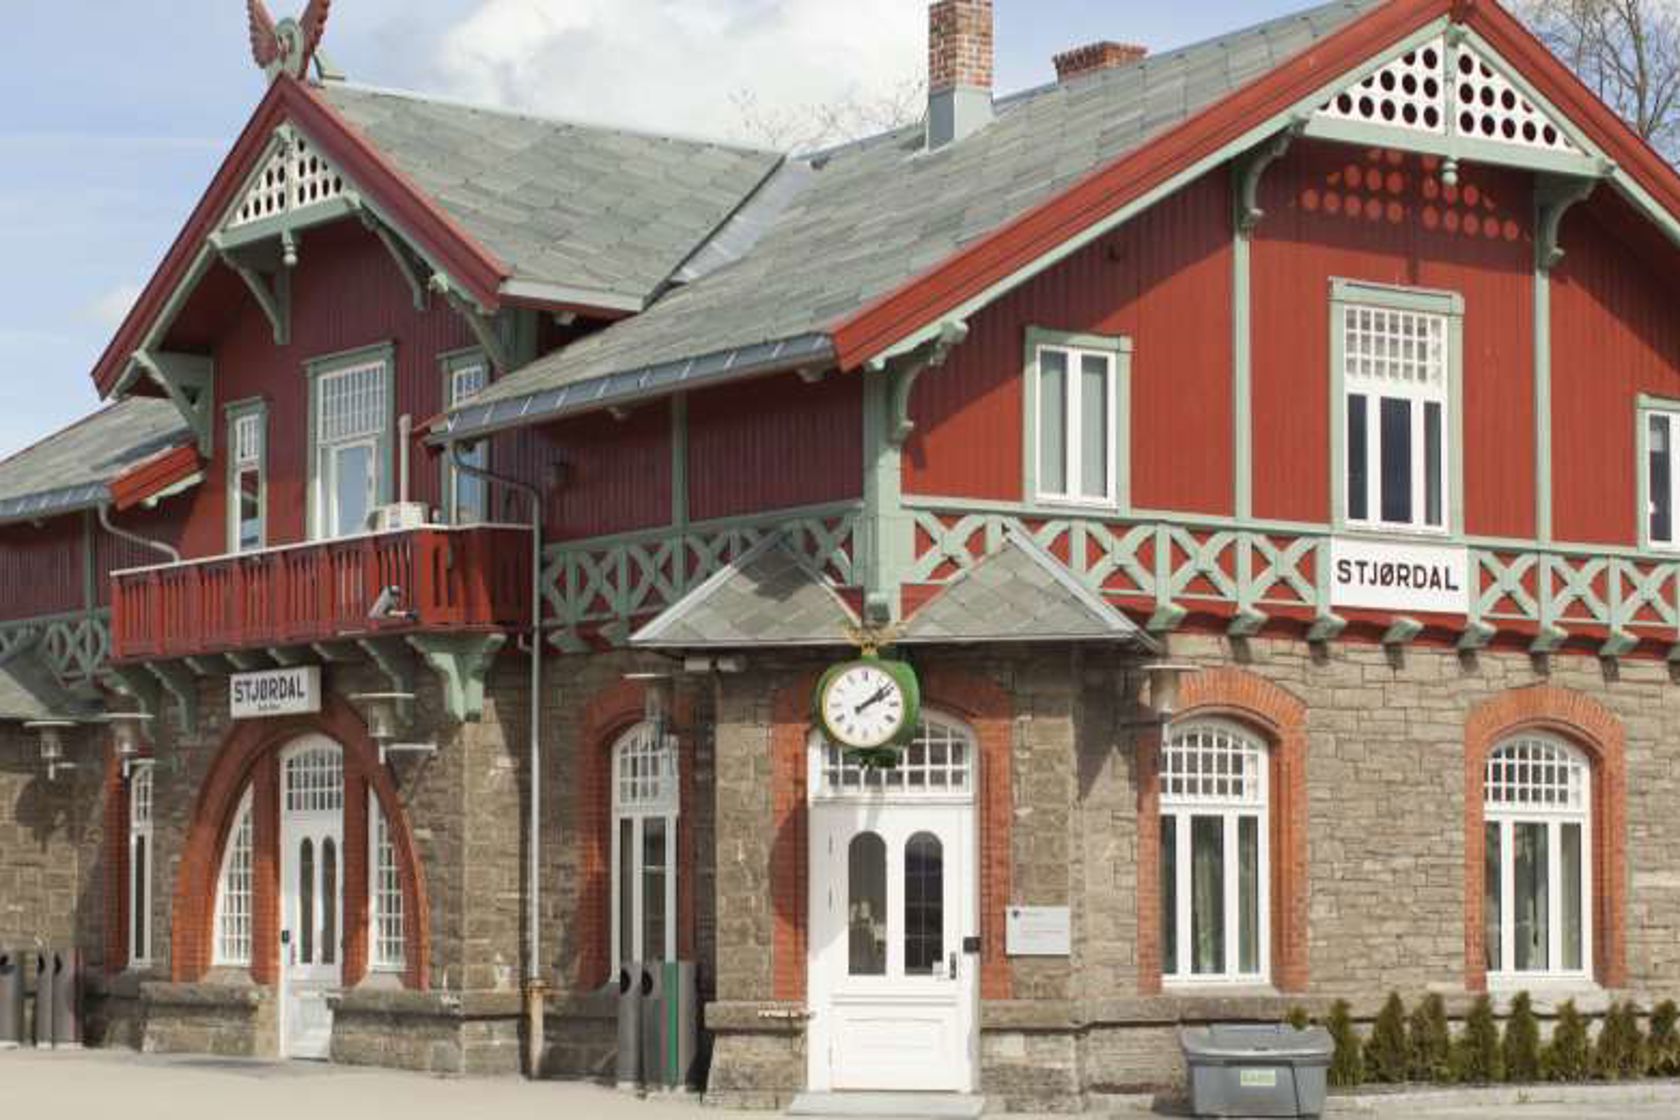 Exterior view of Stjørdal station